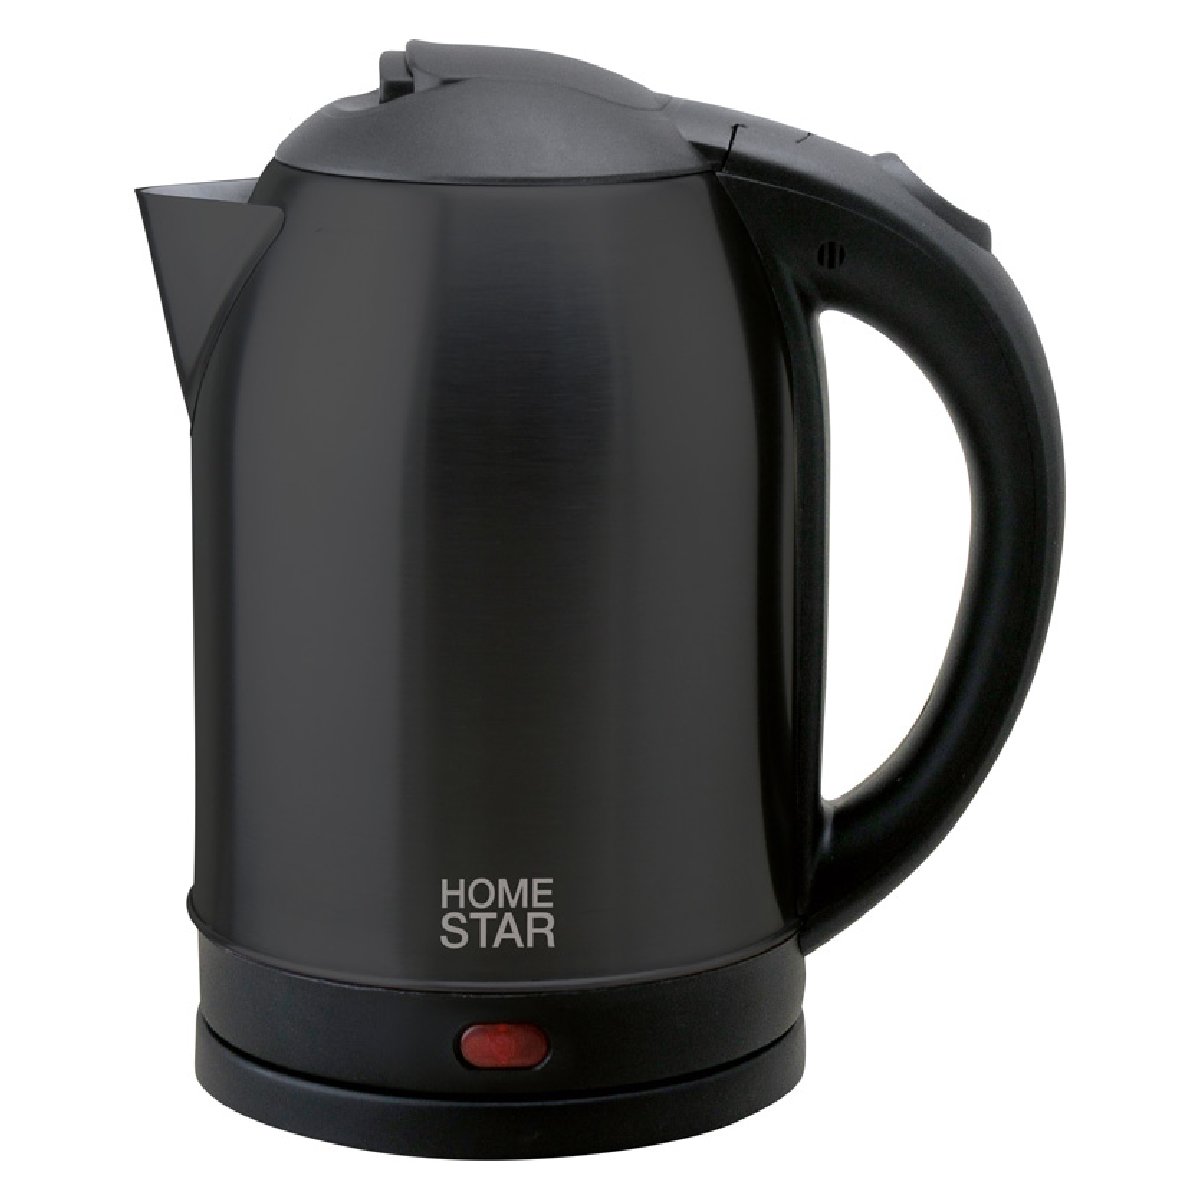 Homestar HS-1009 чайник электрический дисковый, 1.8л, 1500Вт, нержавеющая сталь, черный (002995)Купить